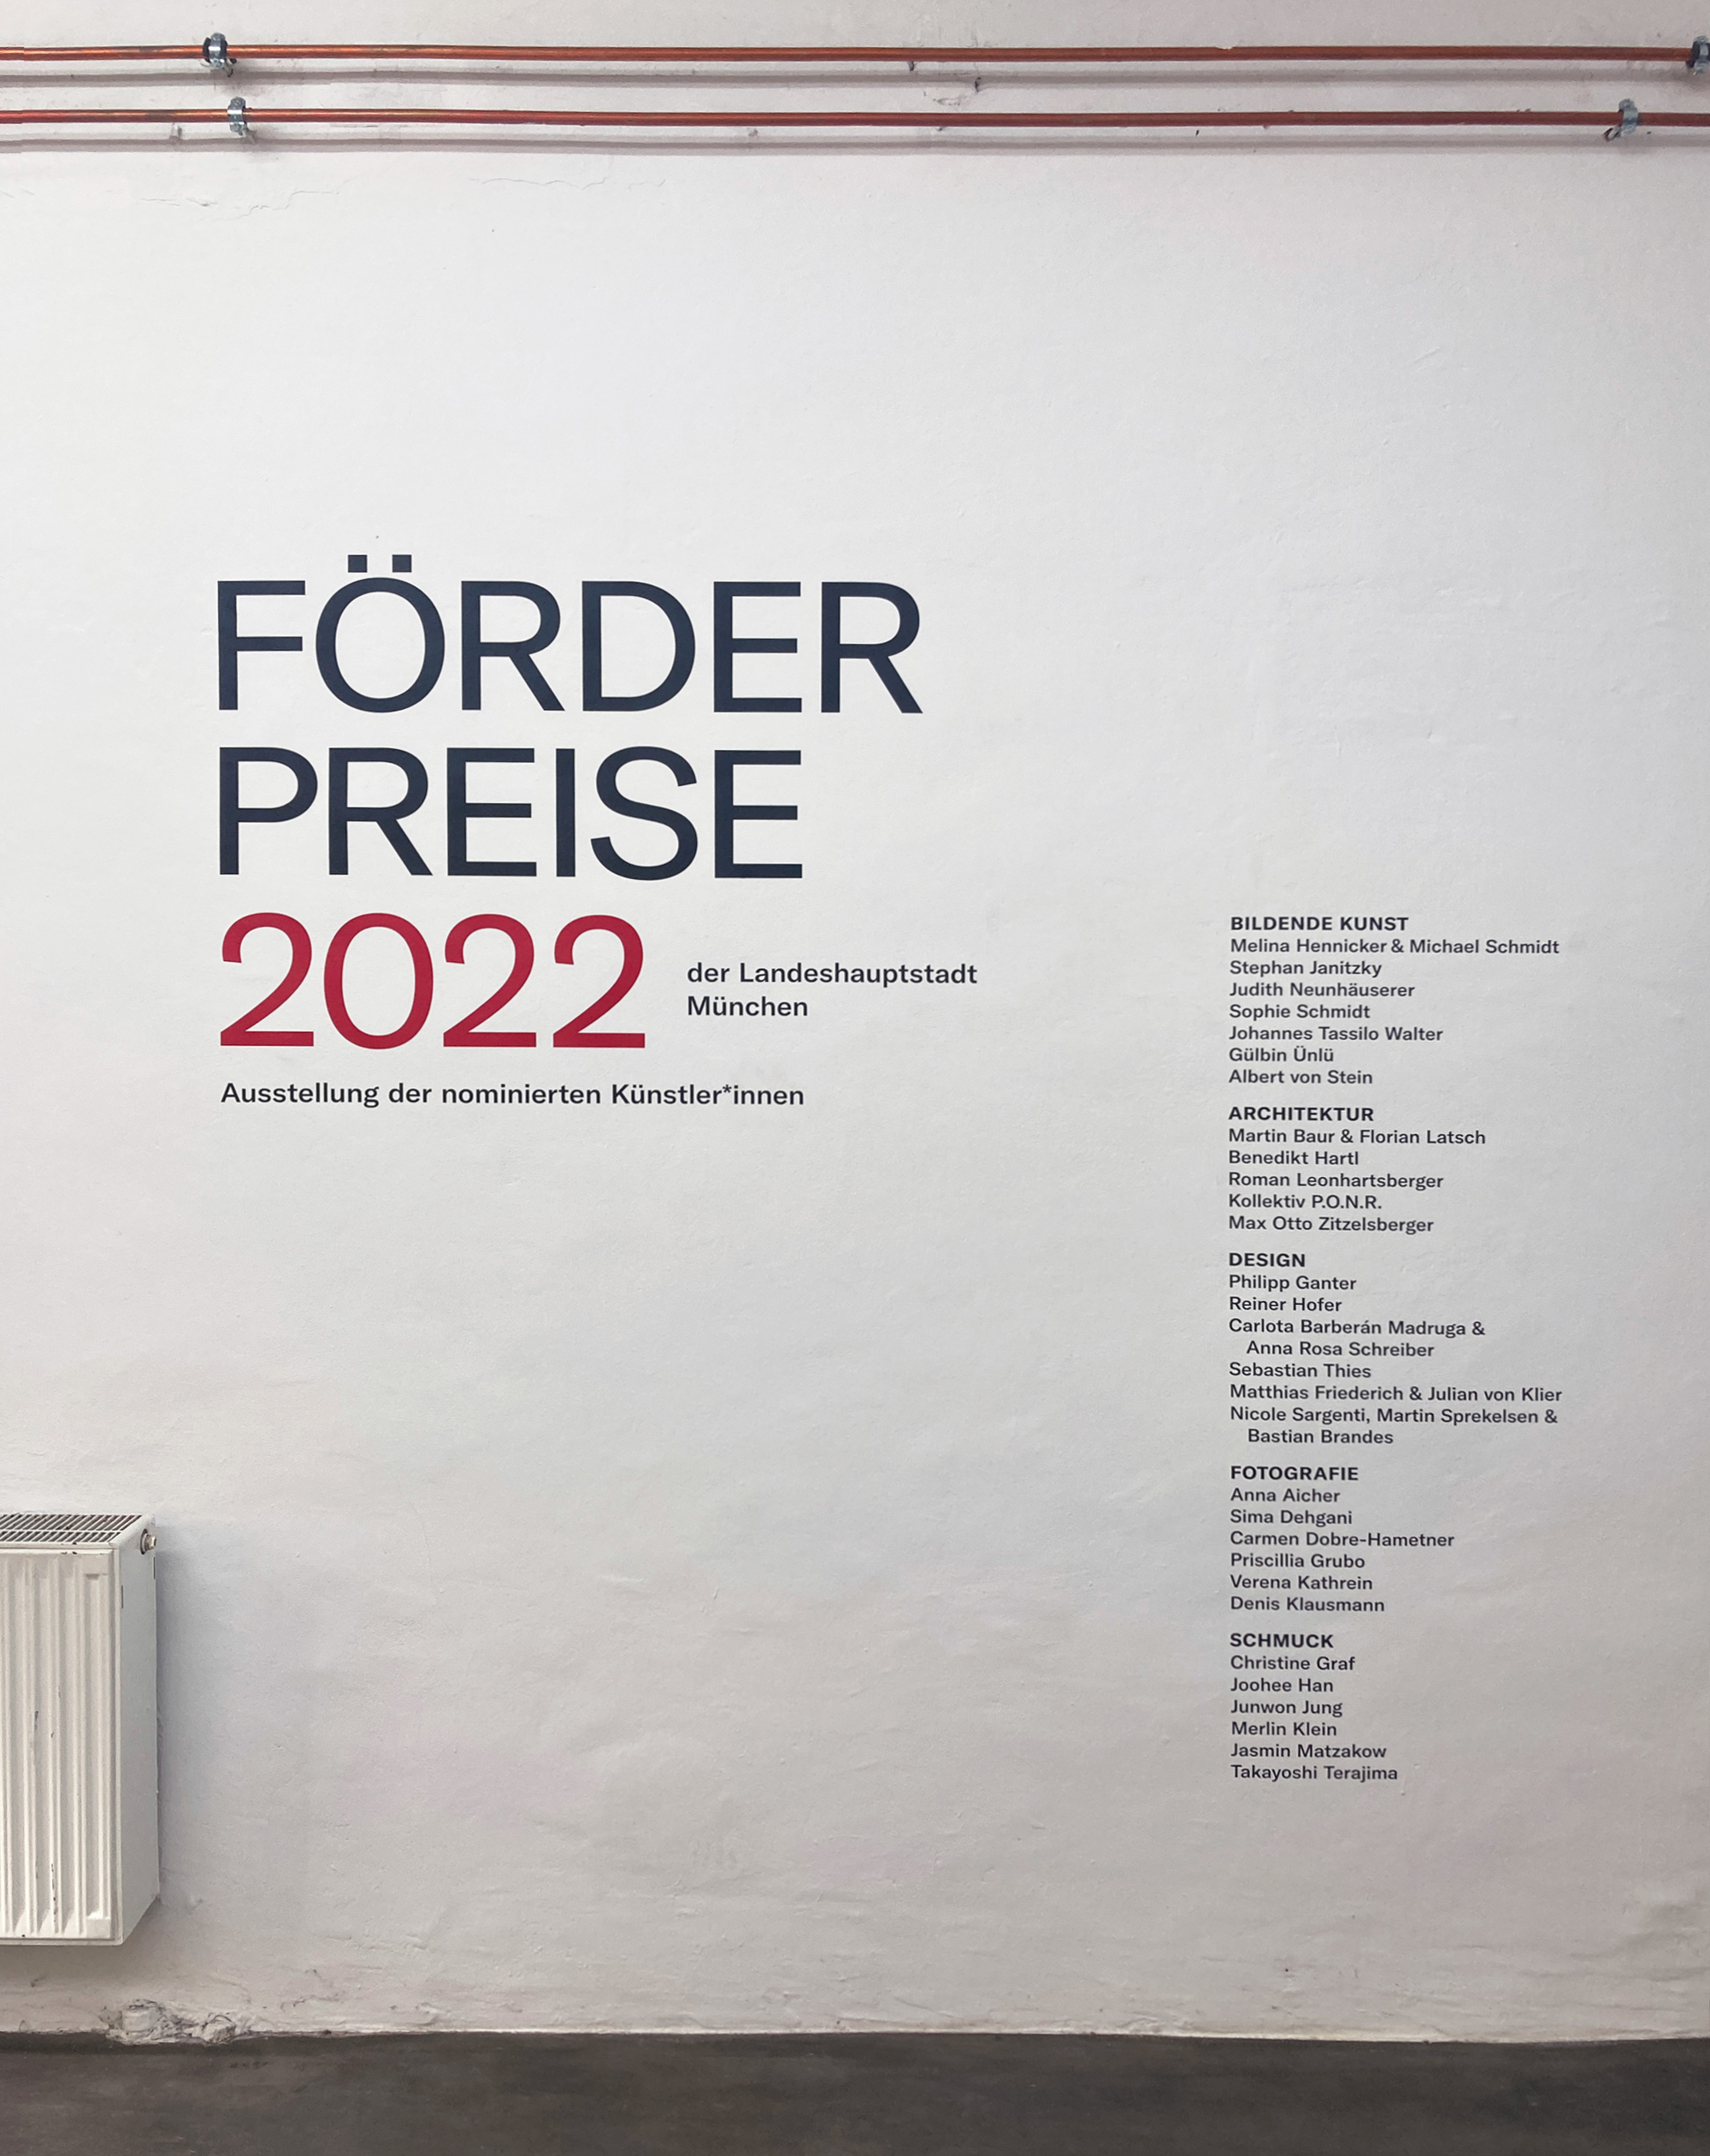 Nominierung für den Förderpreis der Landeshauptstadt München | Bereich Architektur 2022